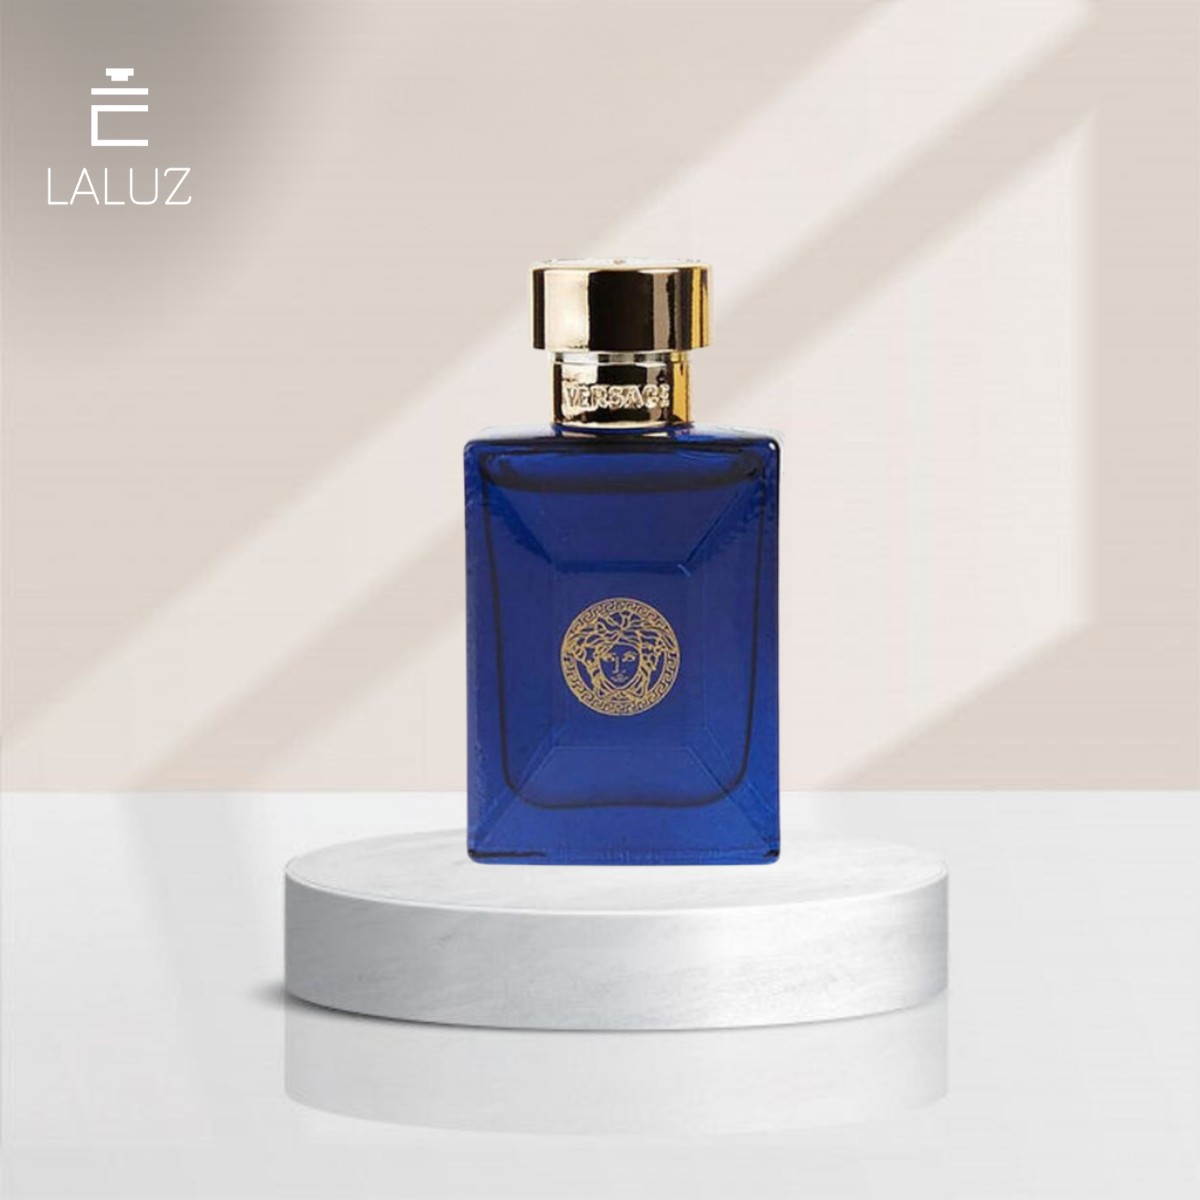 Perfume Versace Dylan Blue nam mang mùi hương nam tính, quyến rũ